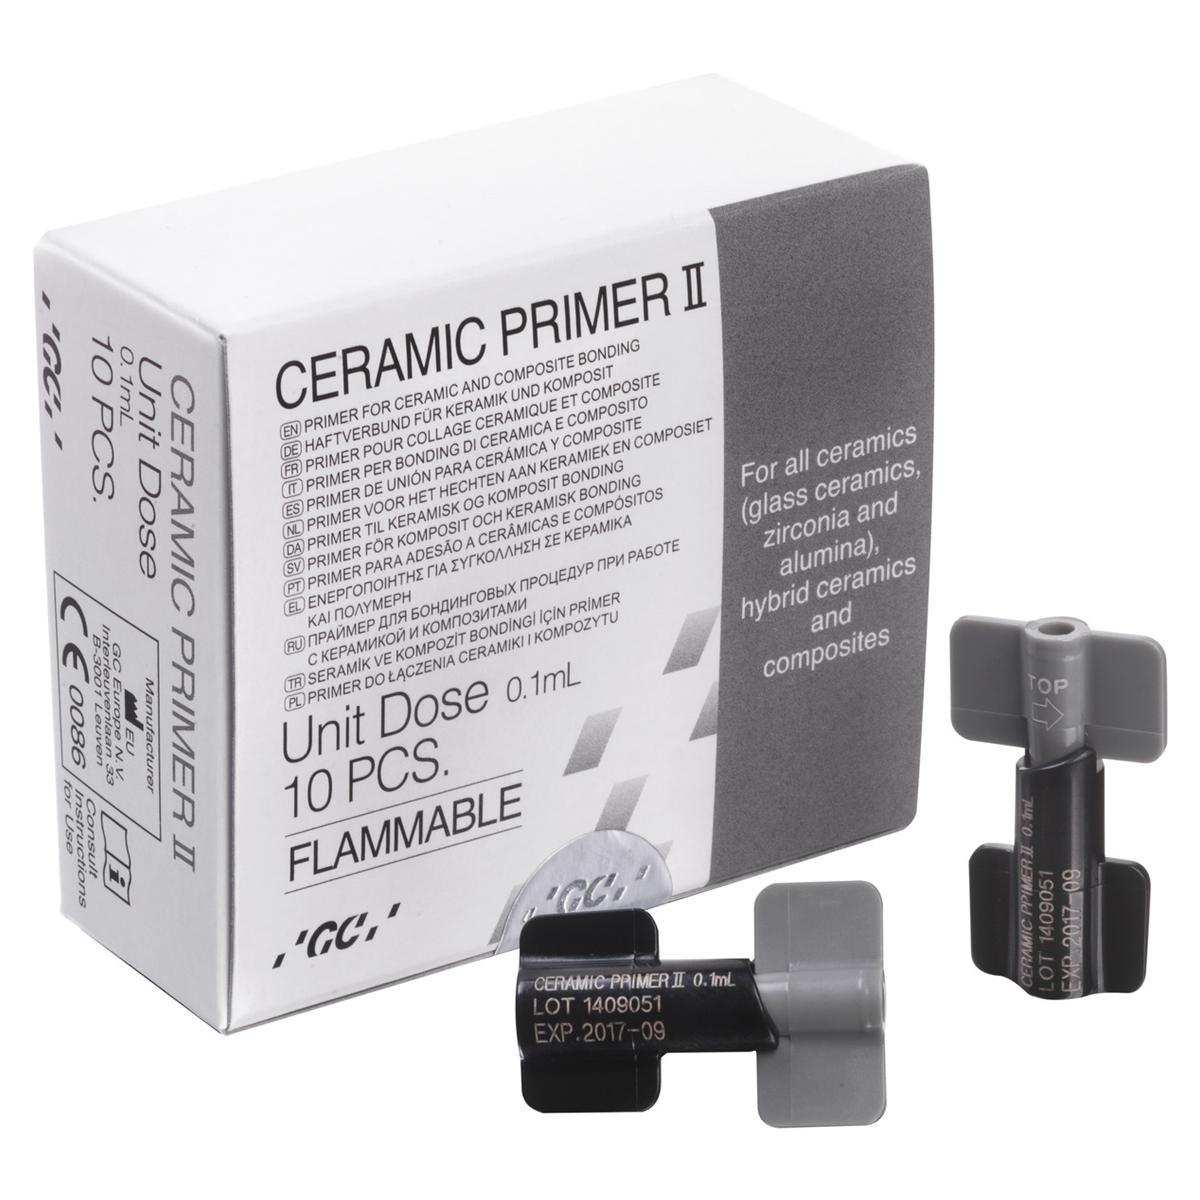 Ceramic Primer II - Unit Dose, 10 pcs